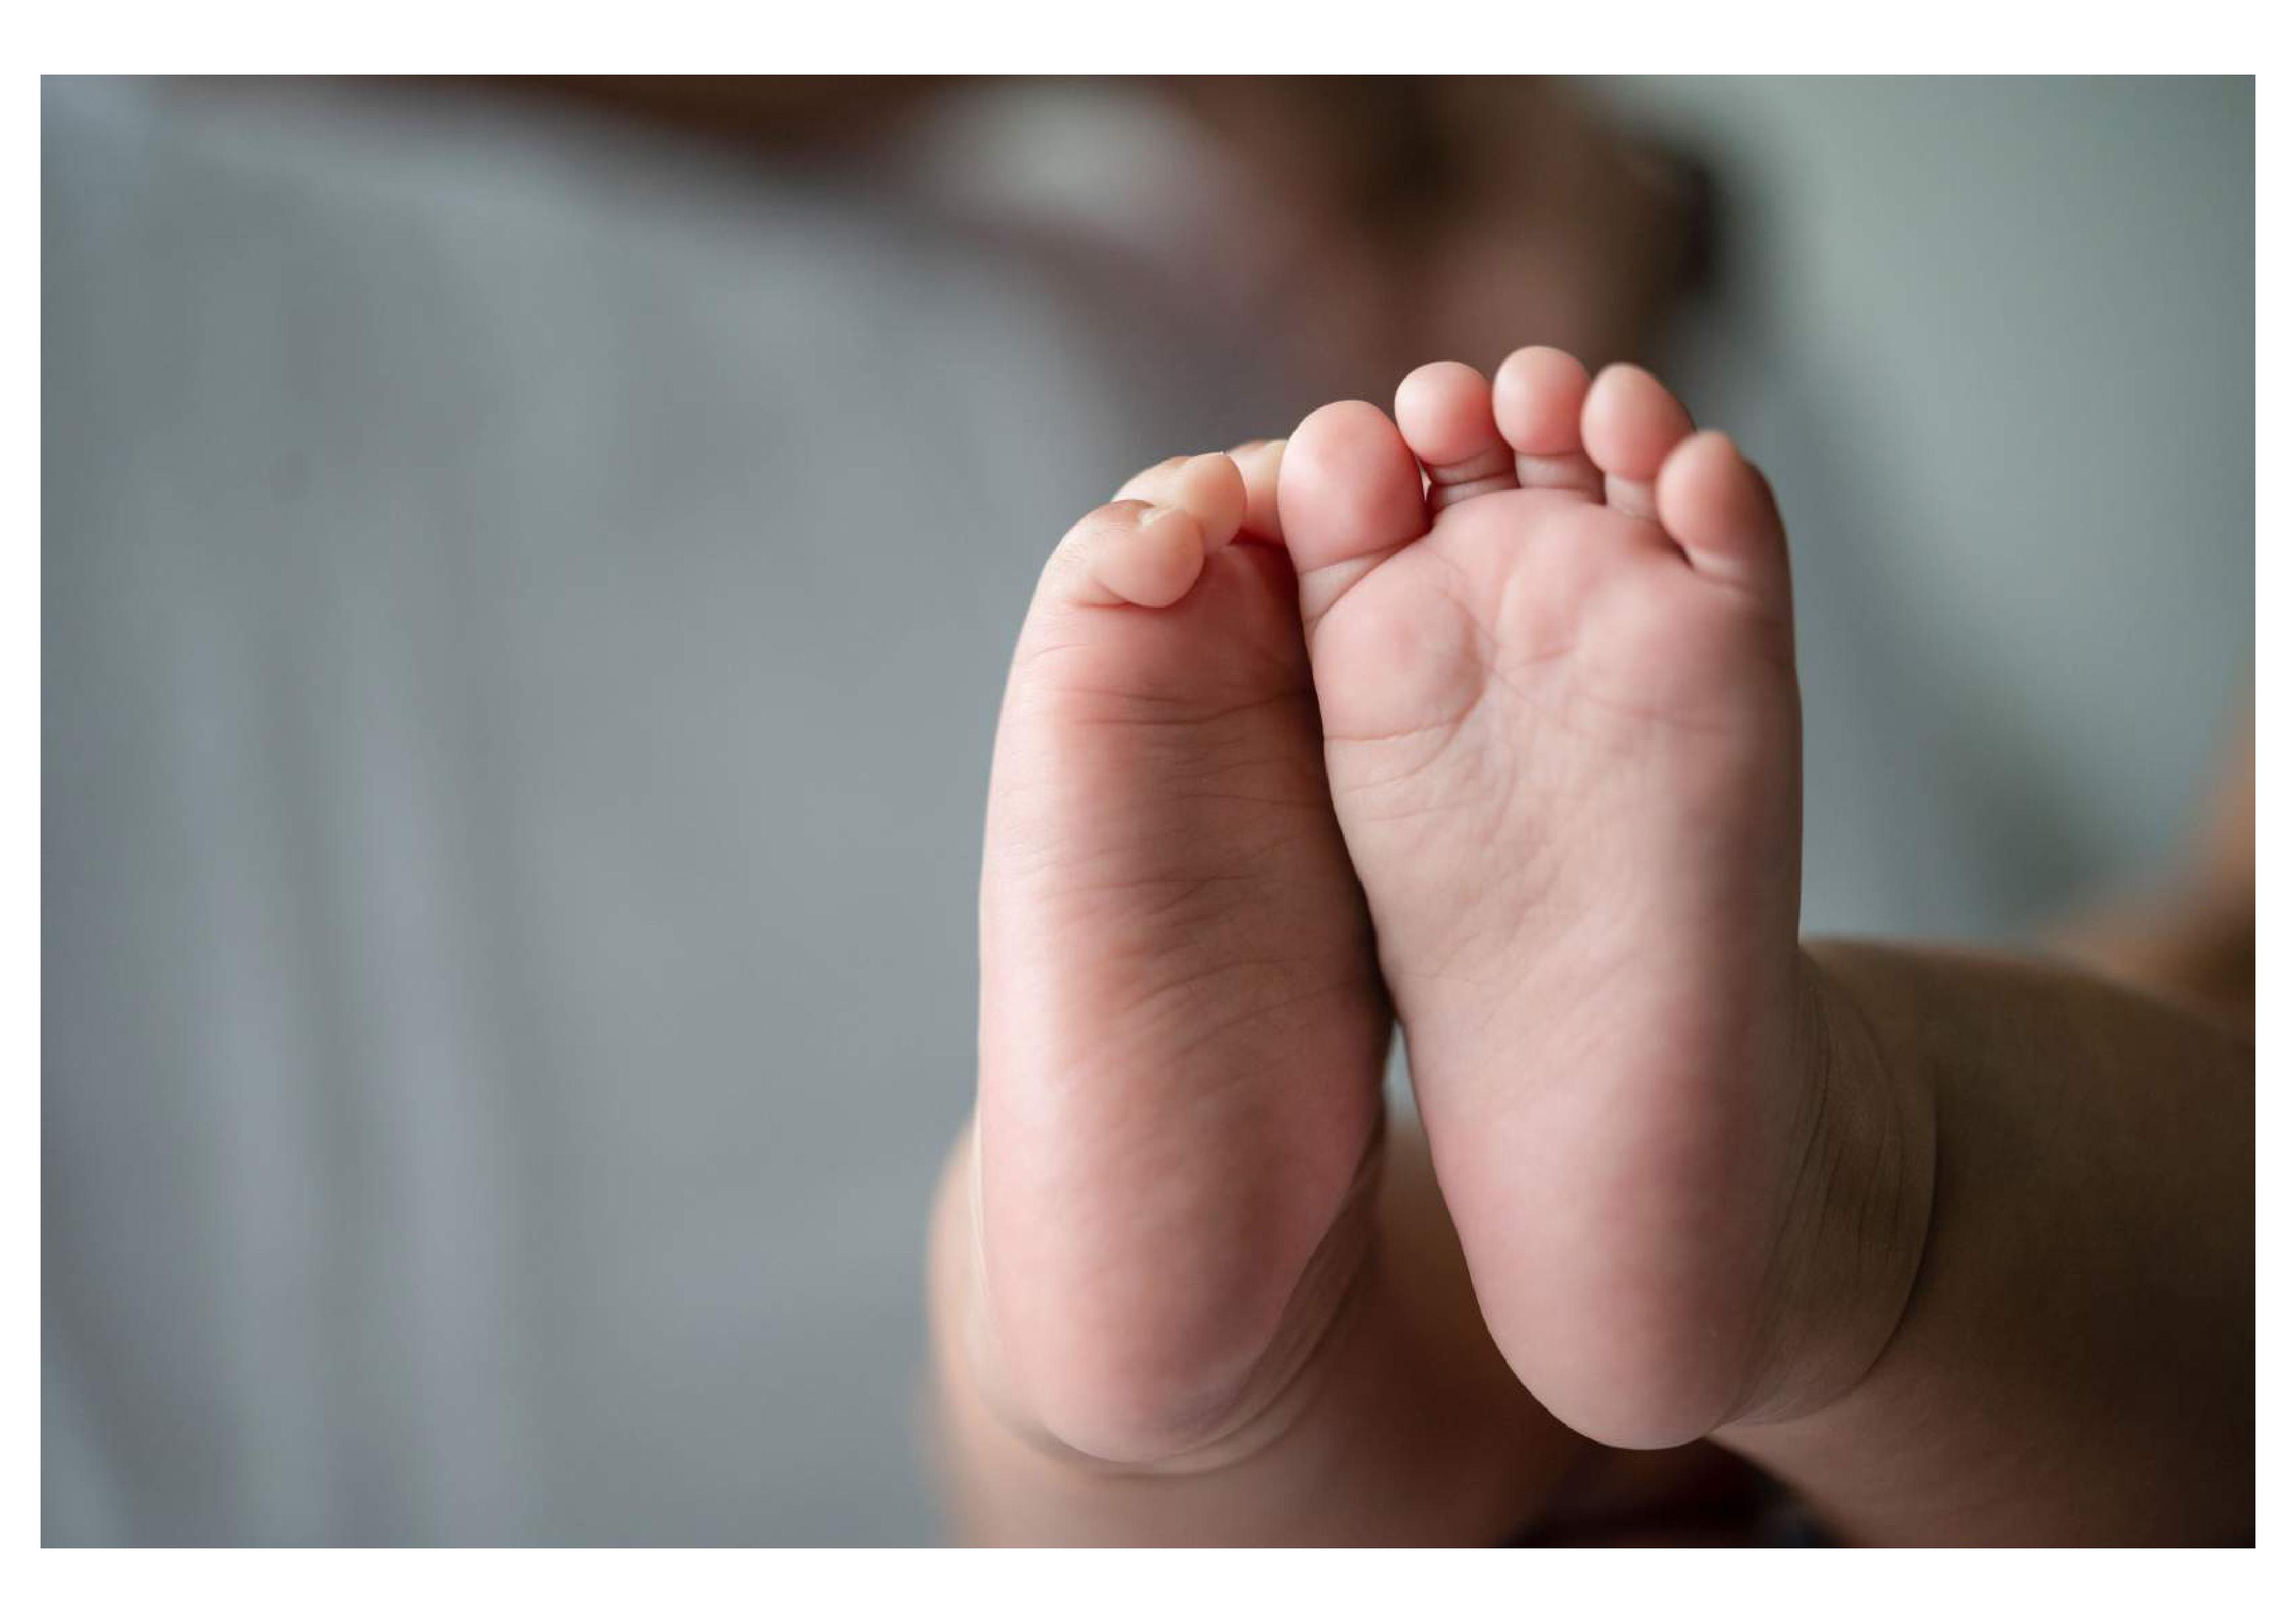 Pies descalzos de un bebé